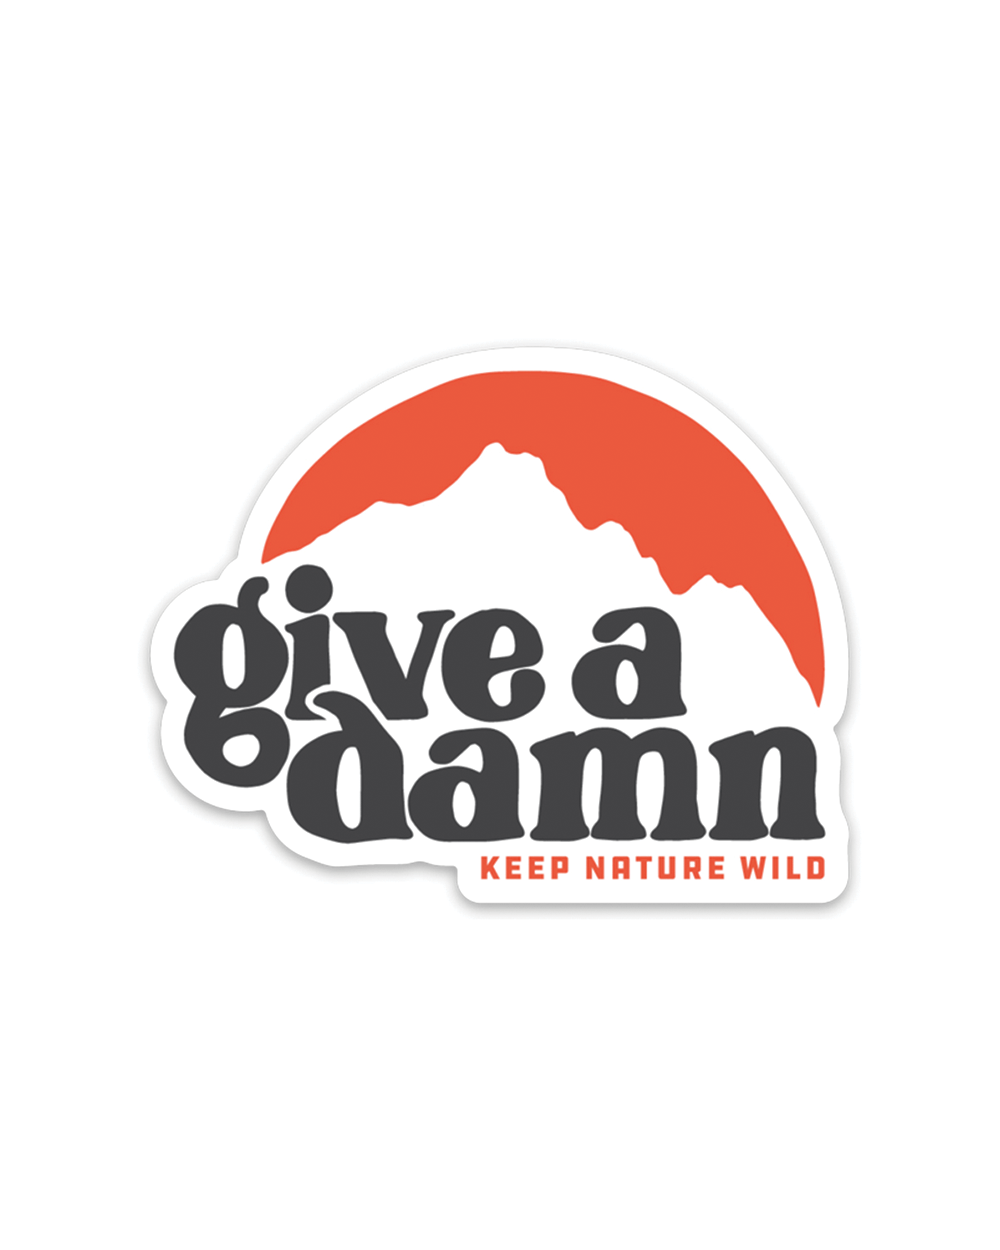 Keep Nature Wild Sticker Give A Damn | Sticker